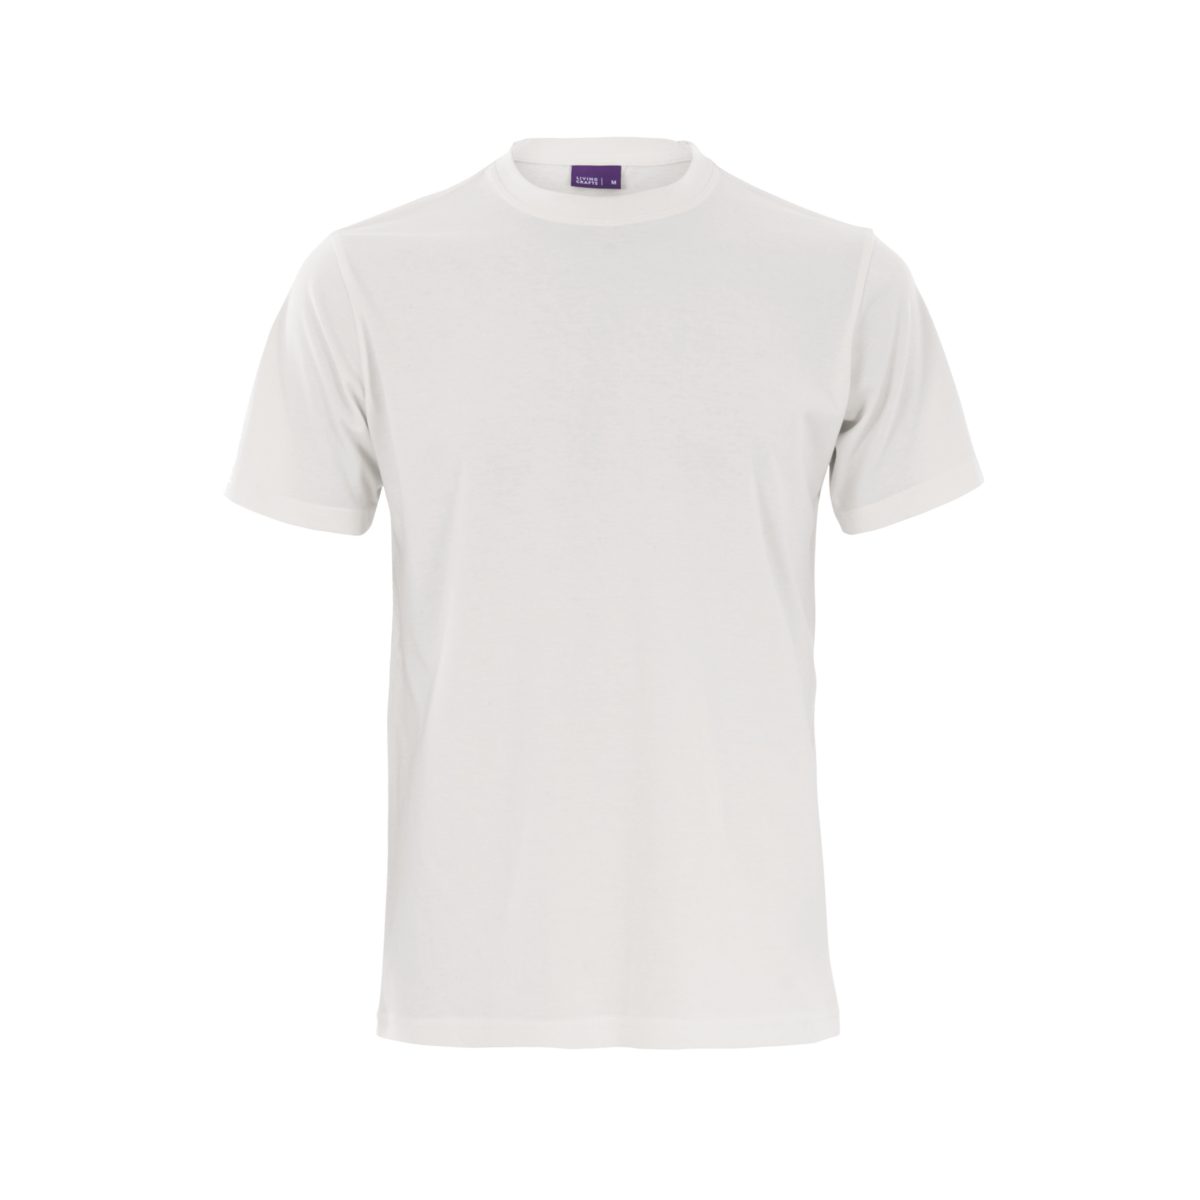 LIVING CRAFTS T-Shirt CLARK Weiches, anschmiegsames Single Jersey White